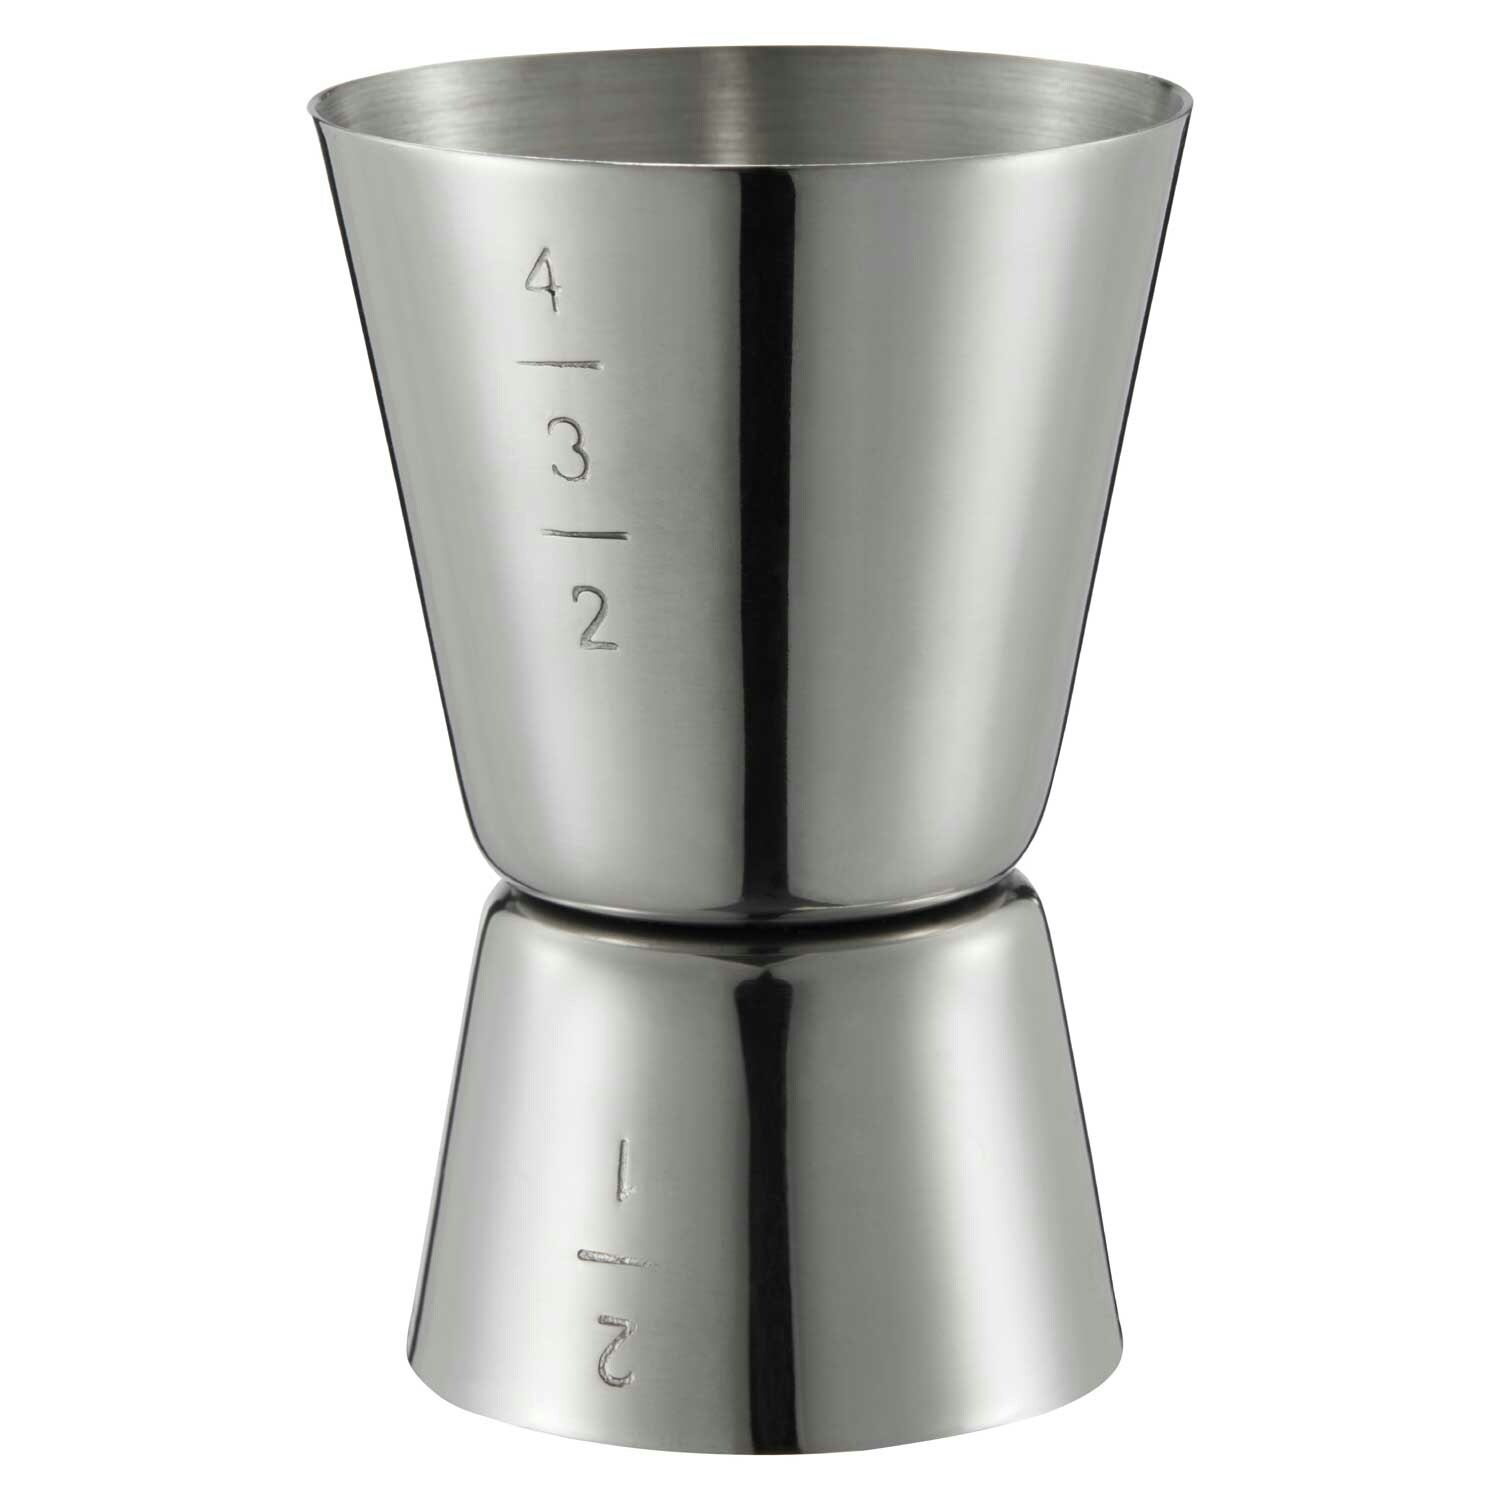 https://royaldesign.com/image/2/dorre-braddon-measuring-cup-2-4-cl-0